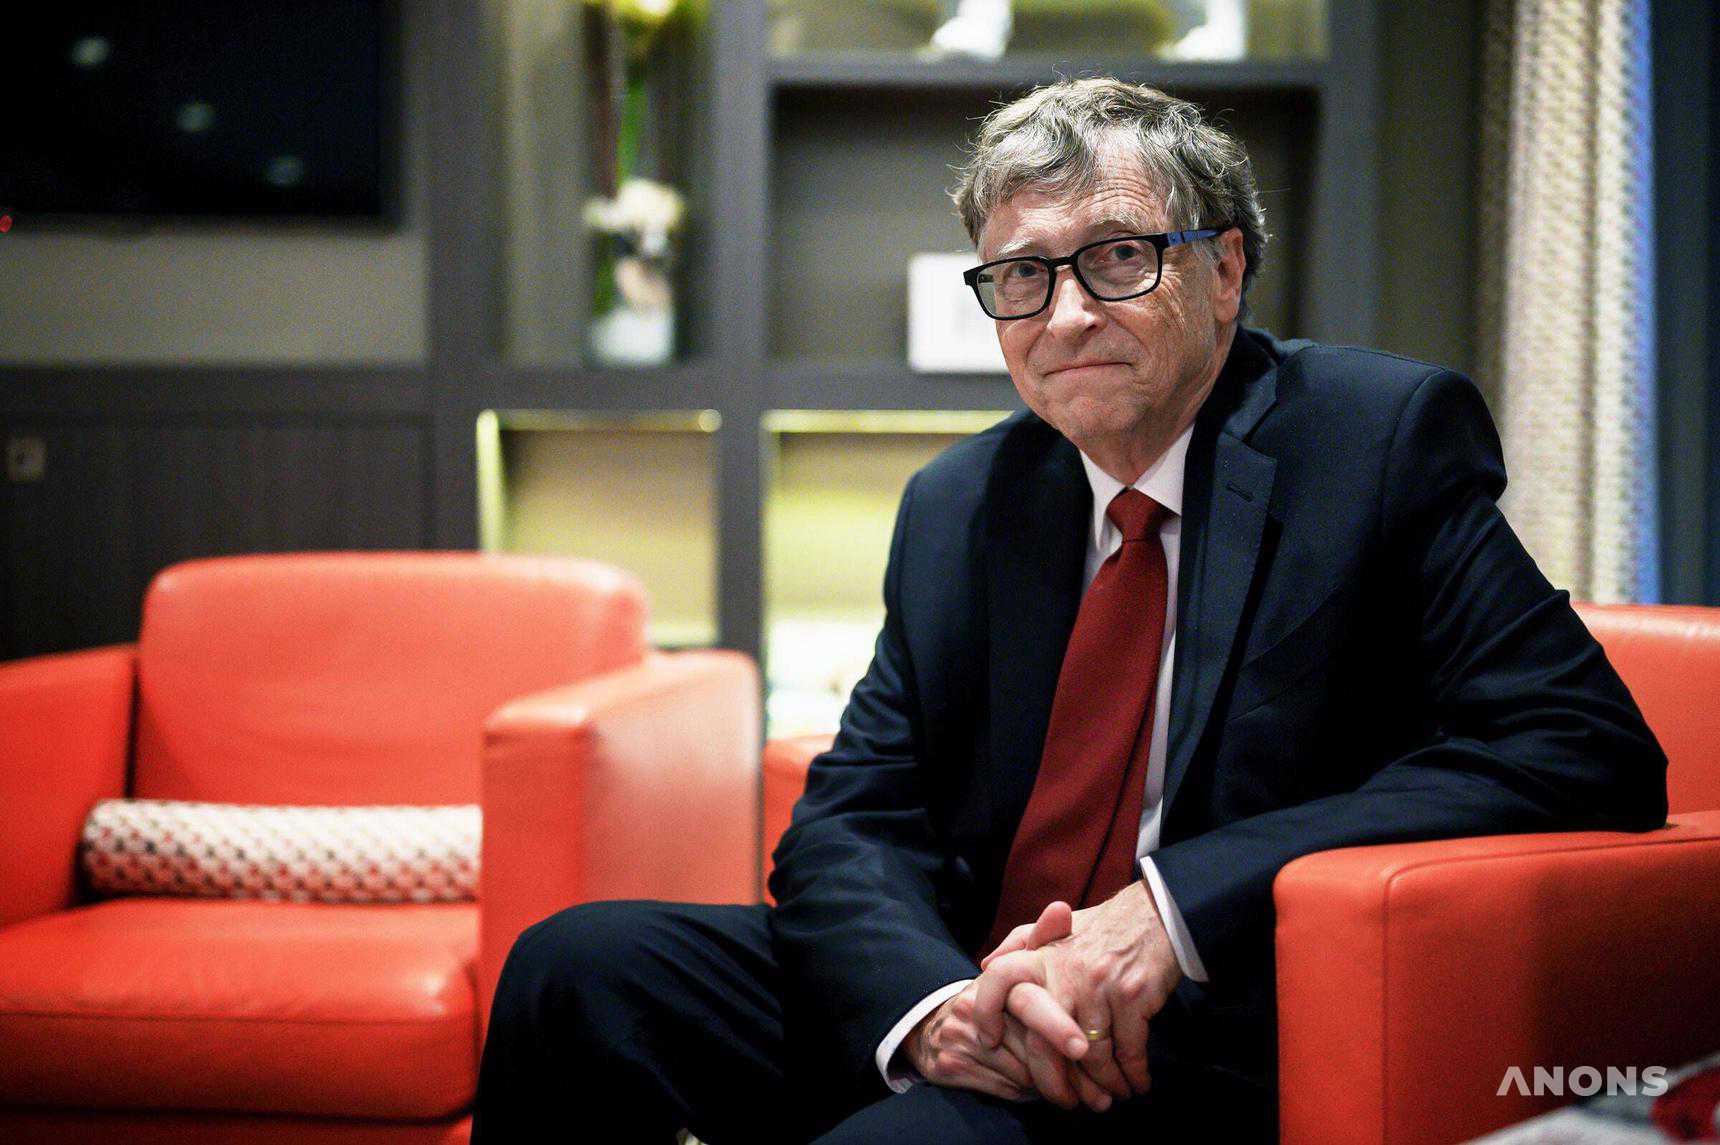 Билл Гейтс предсказал 7 изменений в ближайшие годы